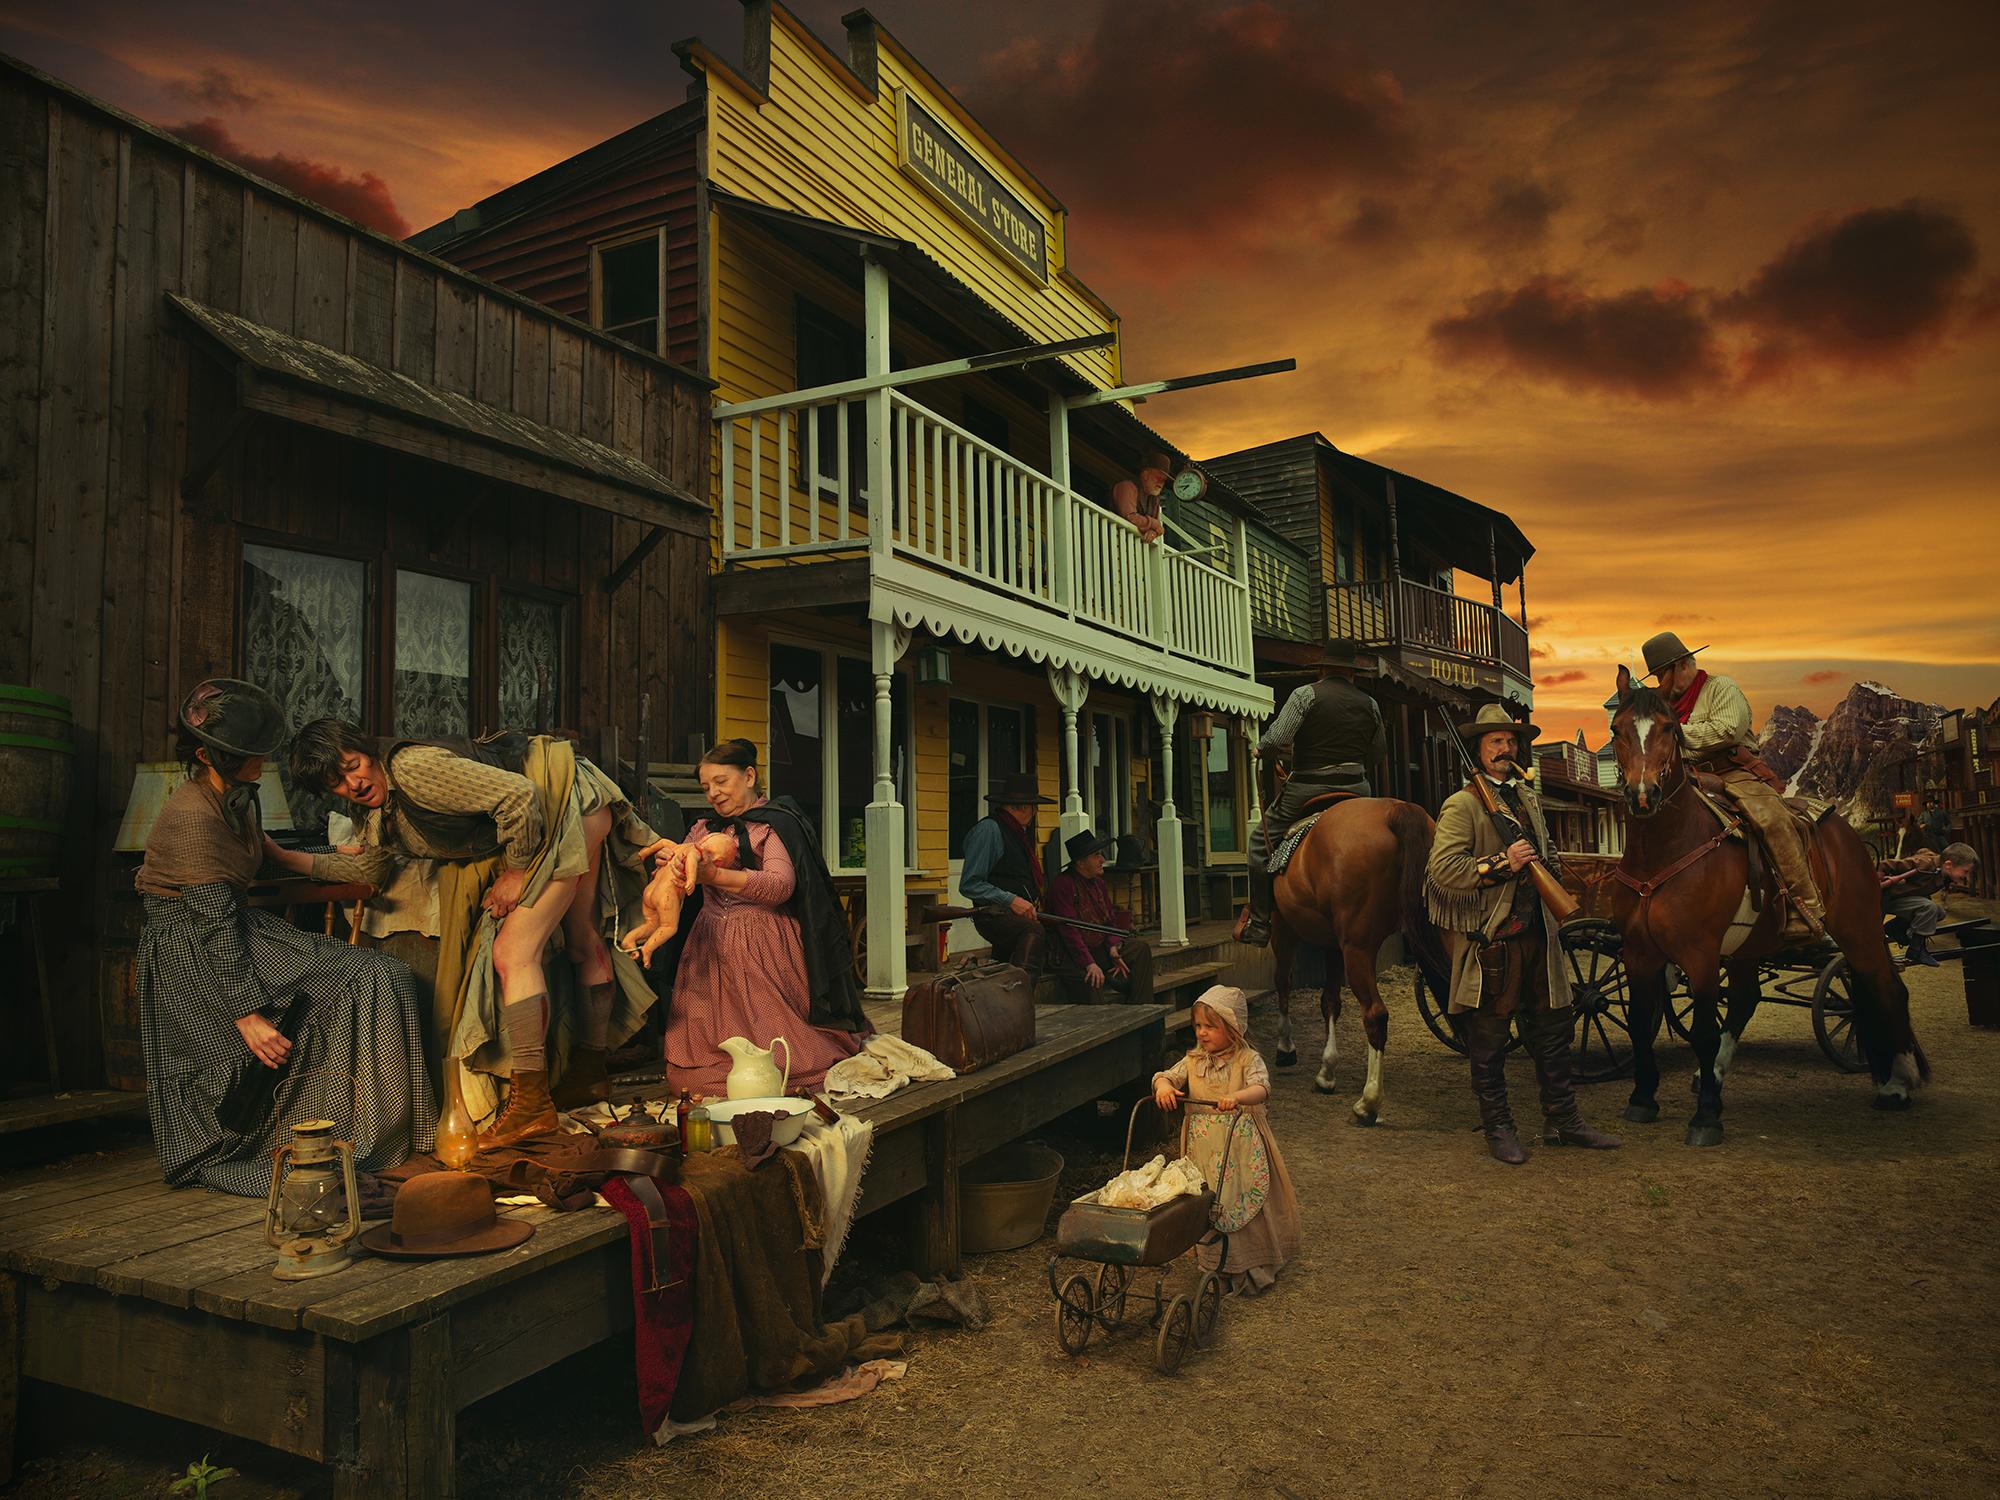 Figurative Photograph Natalie Lennard - Né de la Calamité -  Photographie de Wild West + Calamity Jane mise en scène